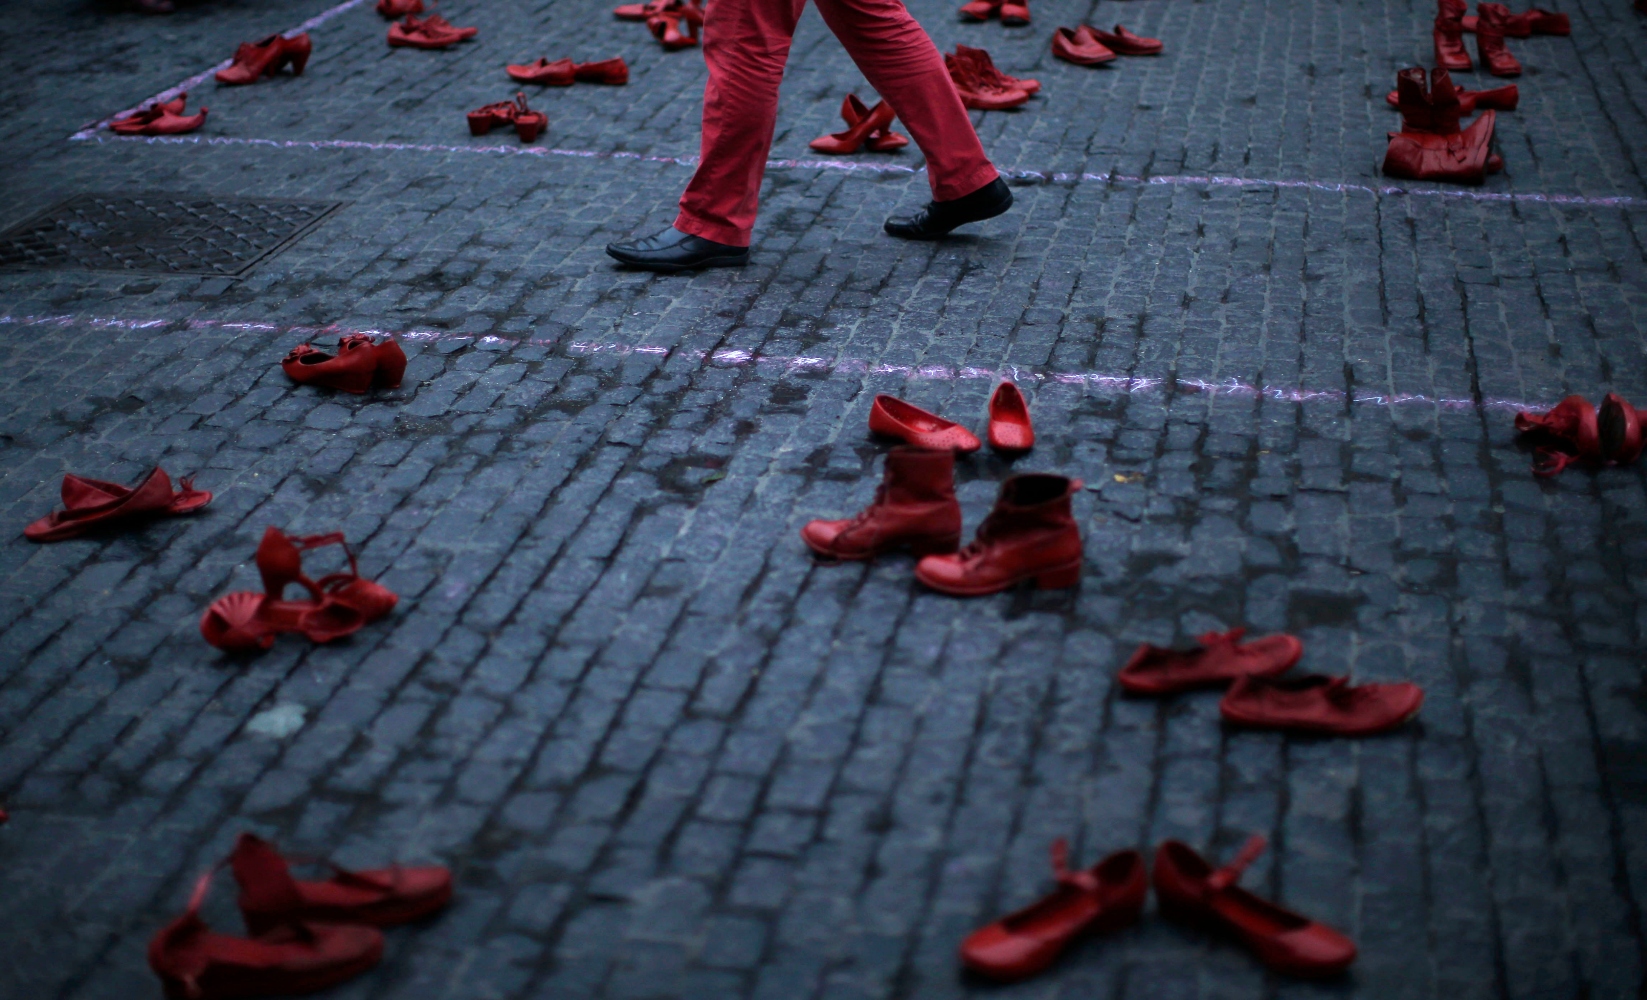 Υπόθεση γυναικοκτονίας στην Ιταλία: Συνελήφθη ο πρώην σύντροφος της 22χρονης